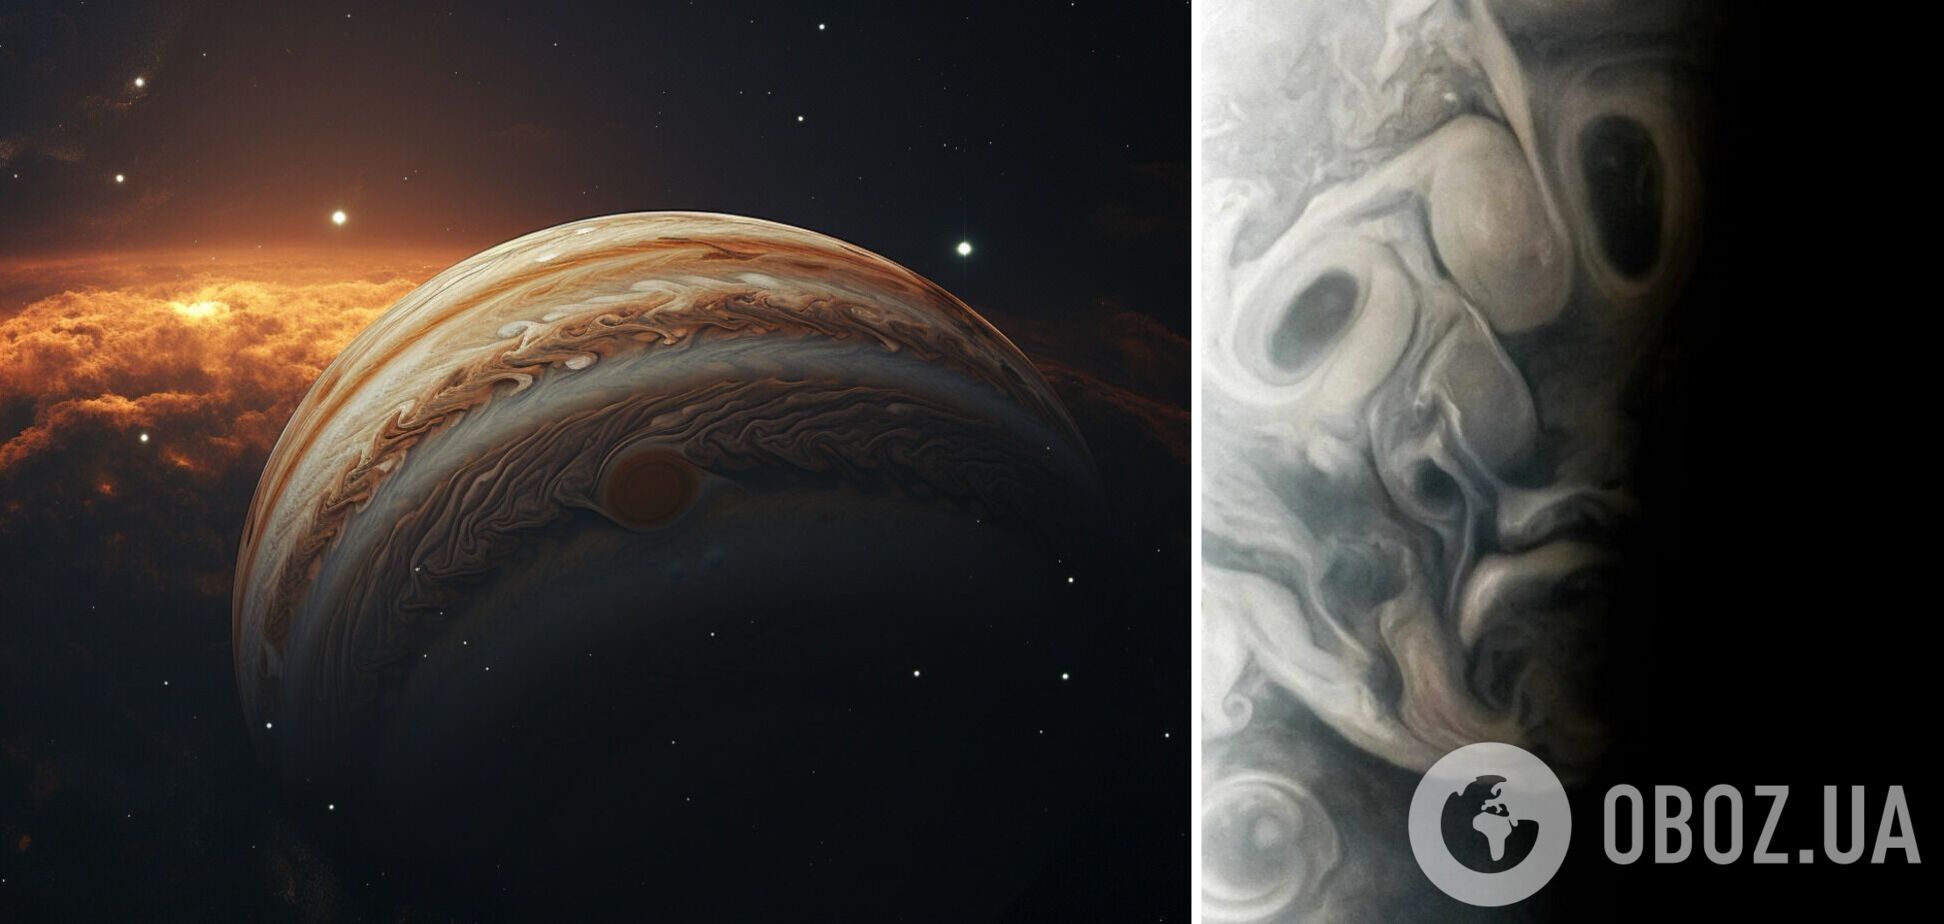 Аппарат NASA сфотографировал жуткое лицо в атмосфере Юпитера. Фото